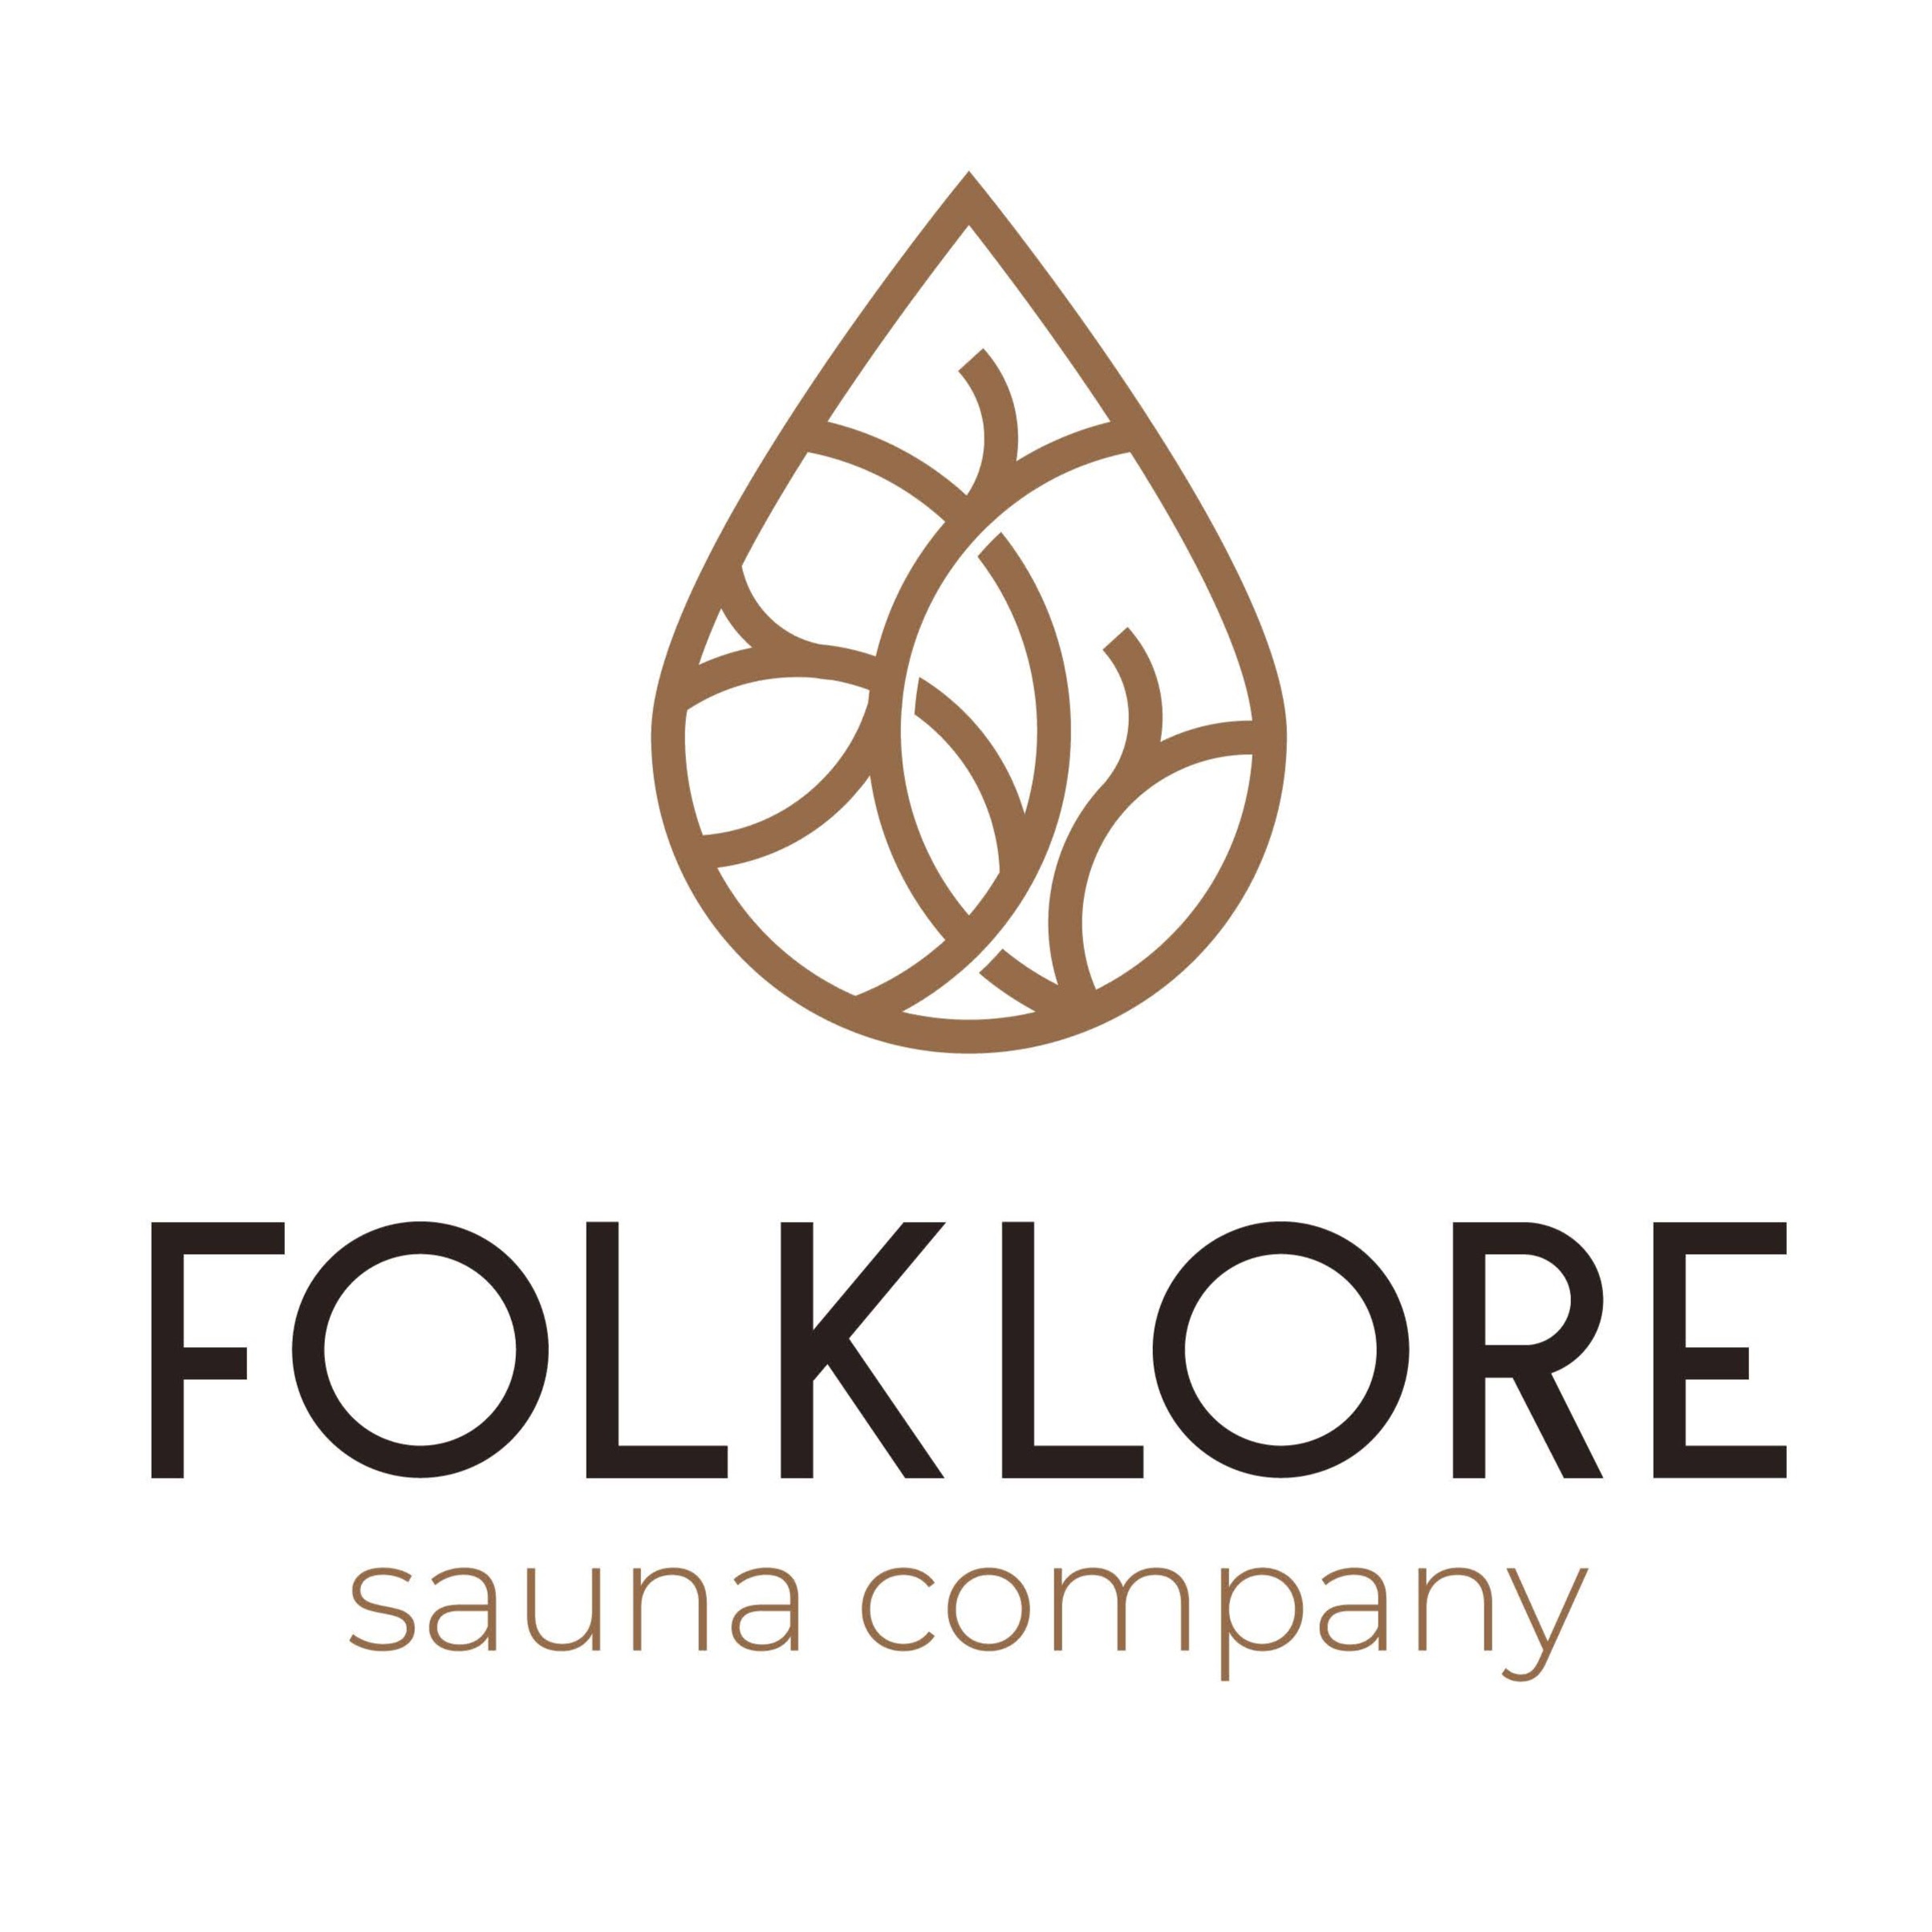 Folklore Sauna Company Logo